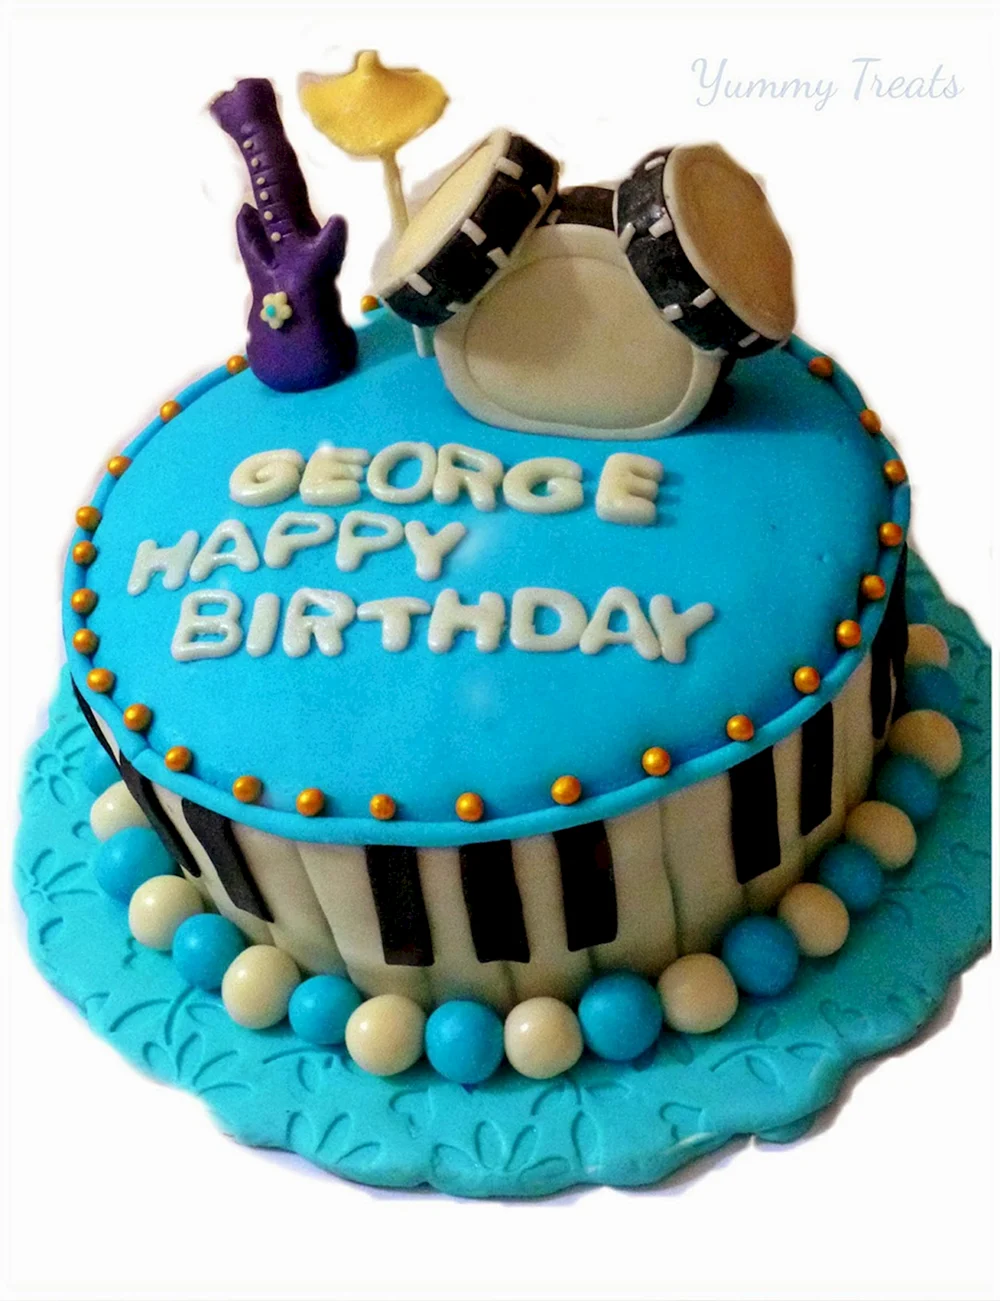 Happy Birthday George